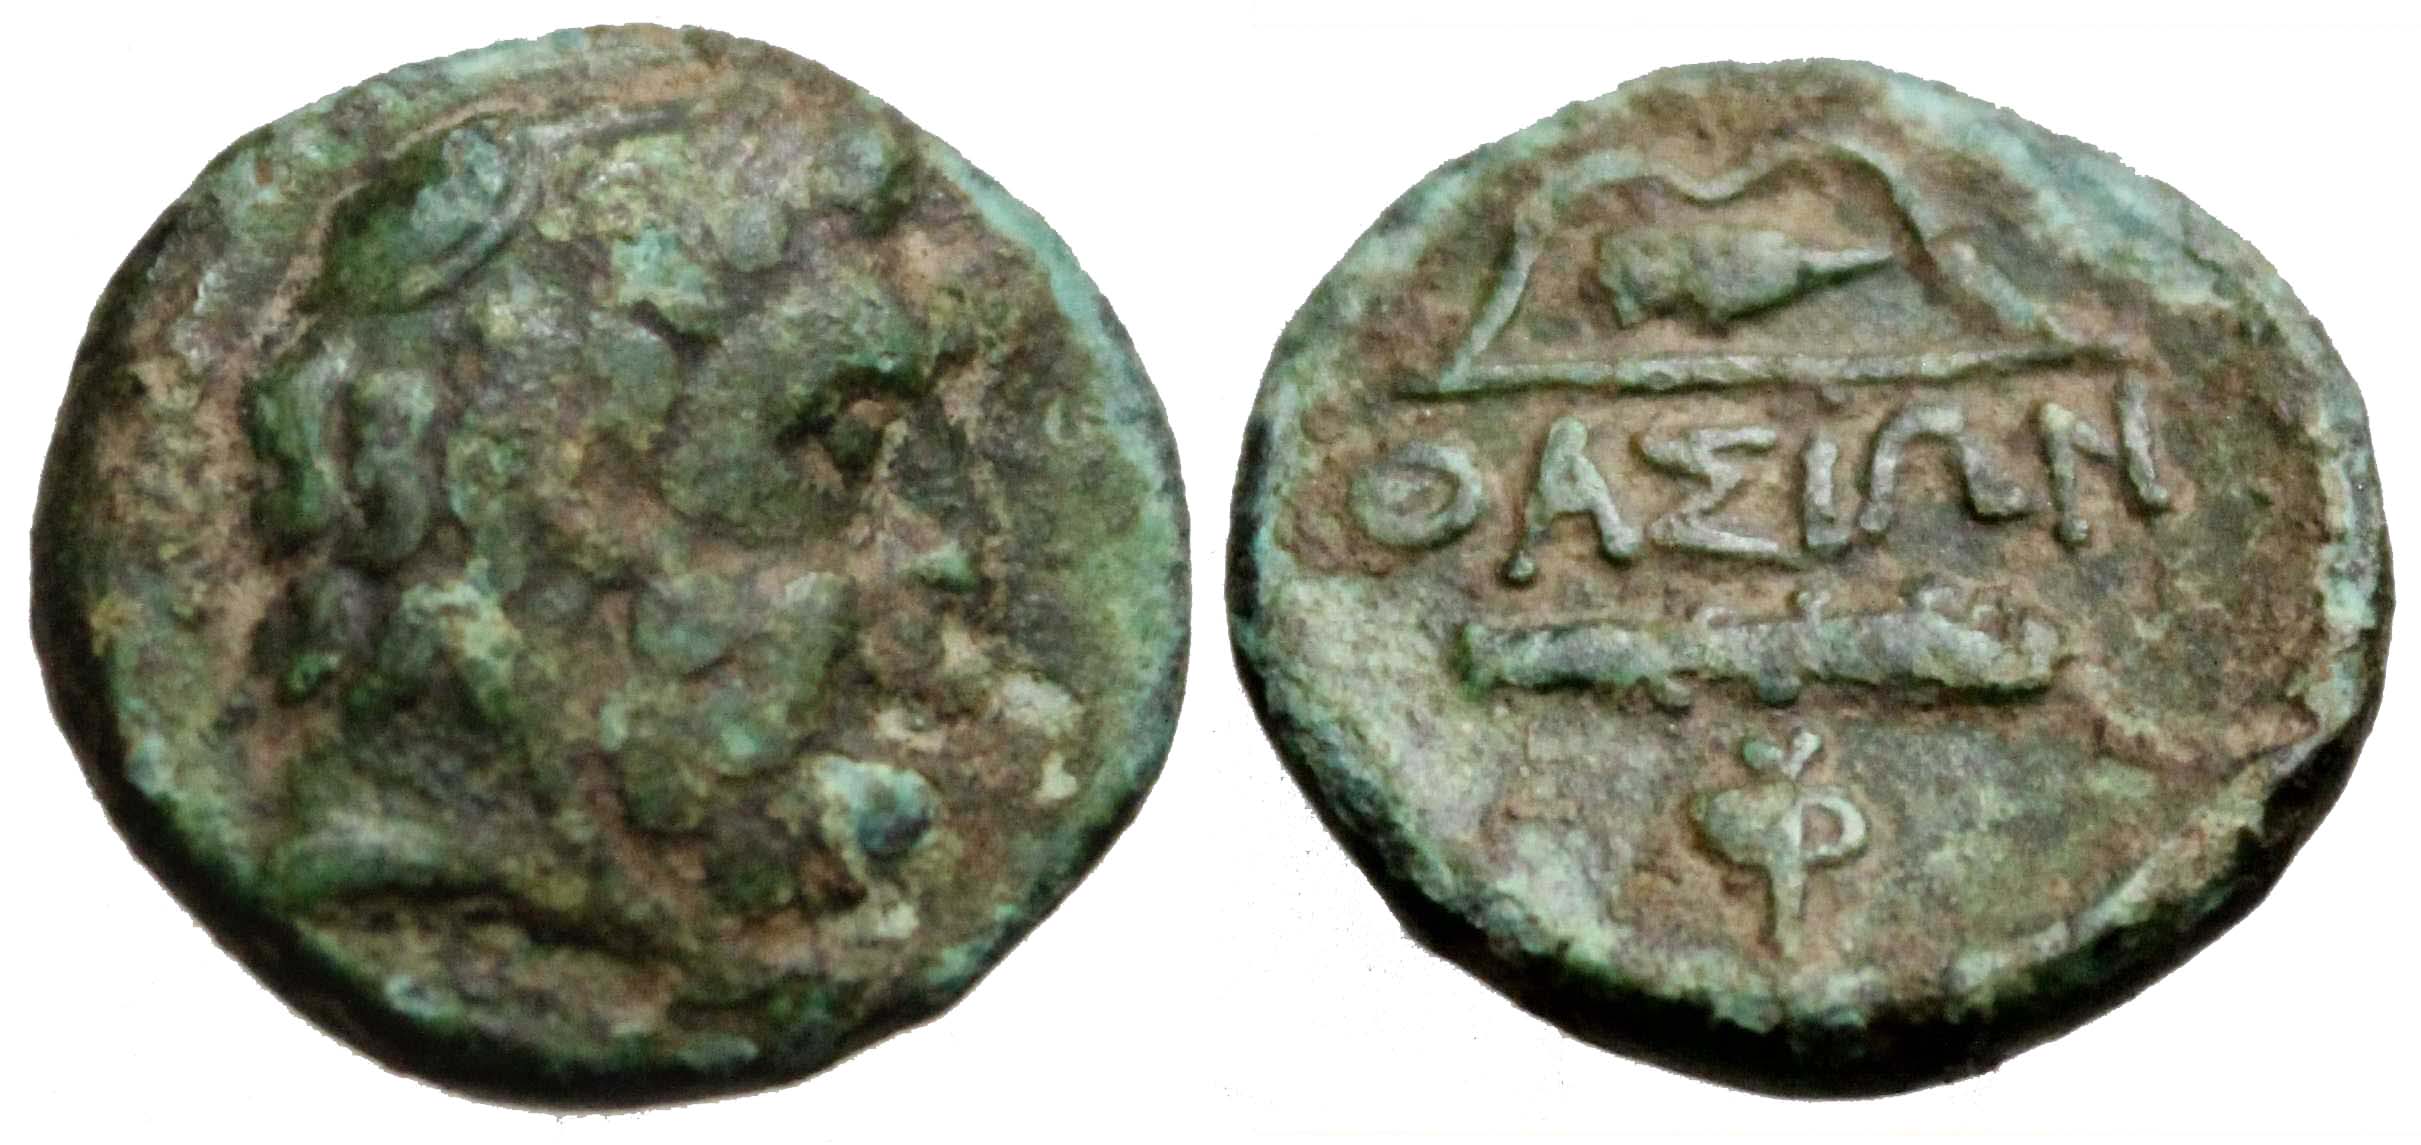 5663 Thasos Insulae Thraciae AE